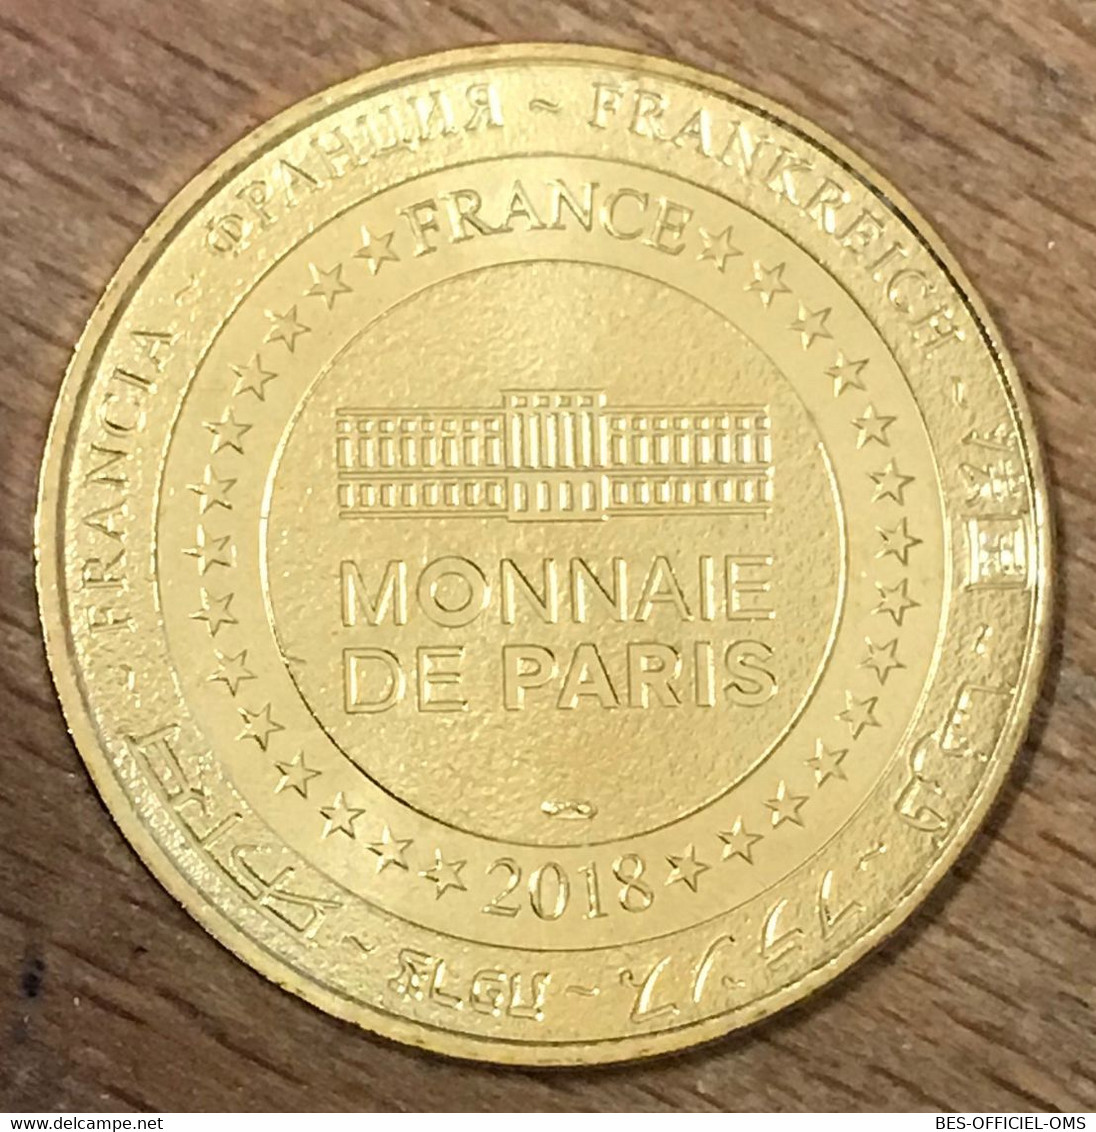 80 THIEPVAL SOMME FRANCE 2018 MDP MÉDAILLE SOUVENIR MONNAIE DE PARIS JETON TOURISTIQUE MEDALS TOKENS COINS - 2018